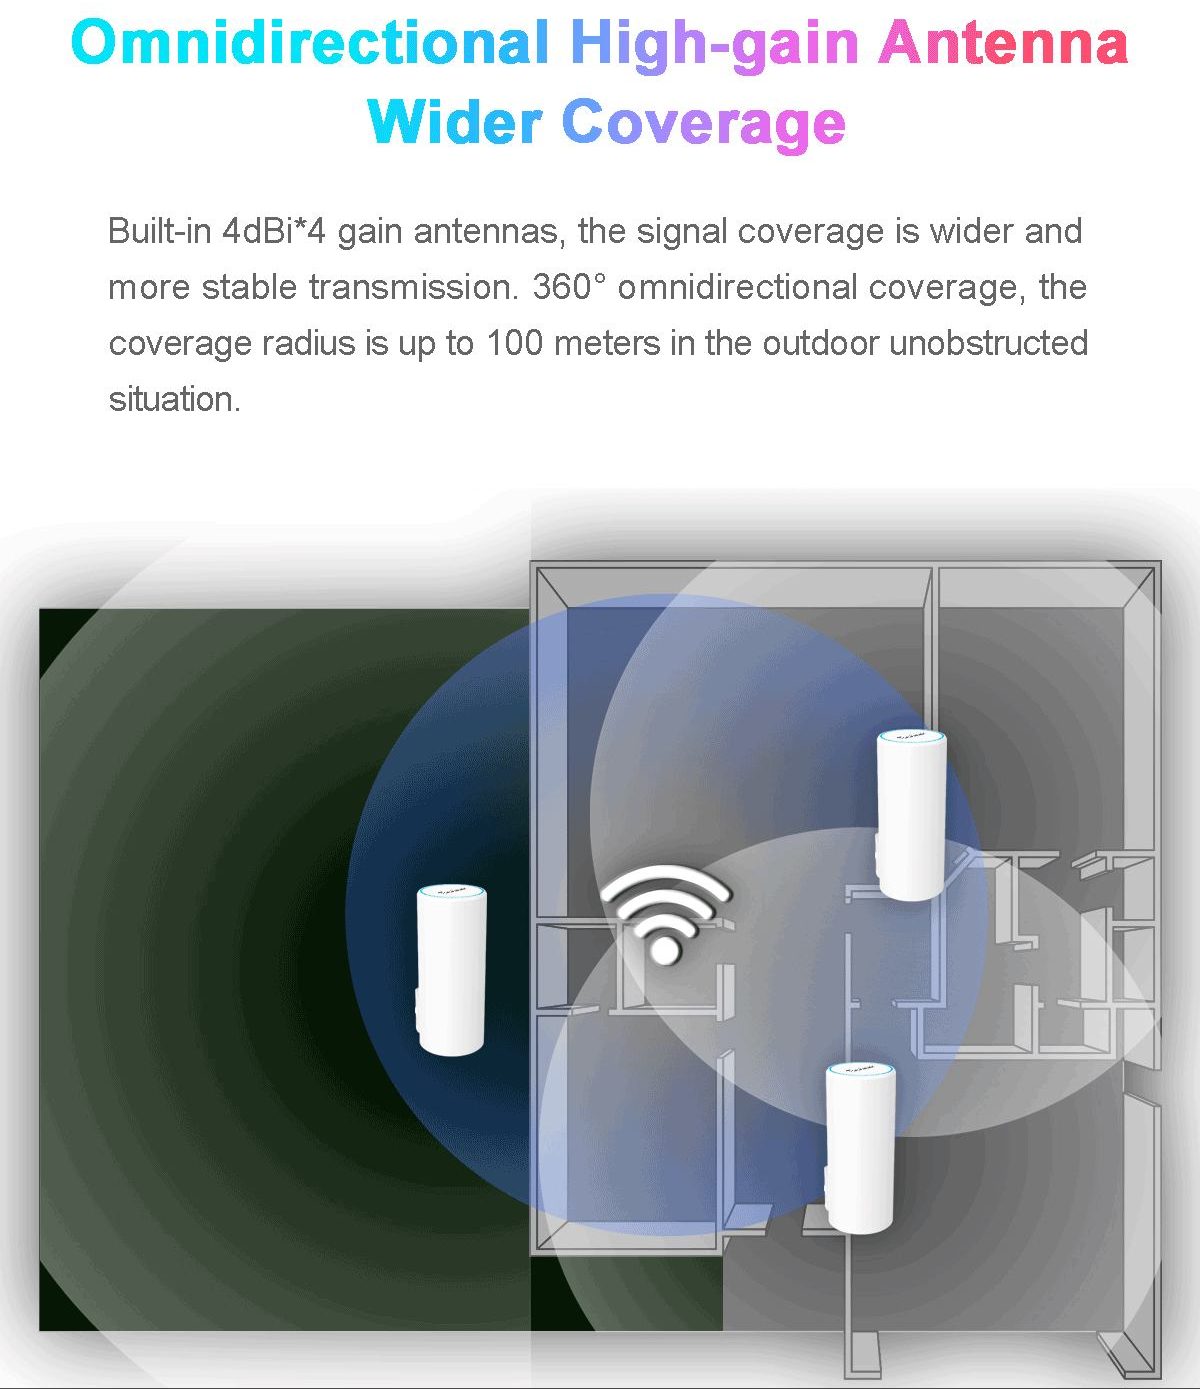 Todaair WiFi6 1800M access point